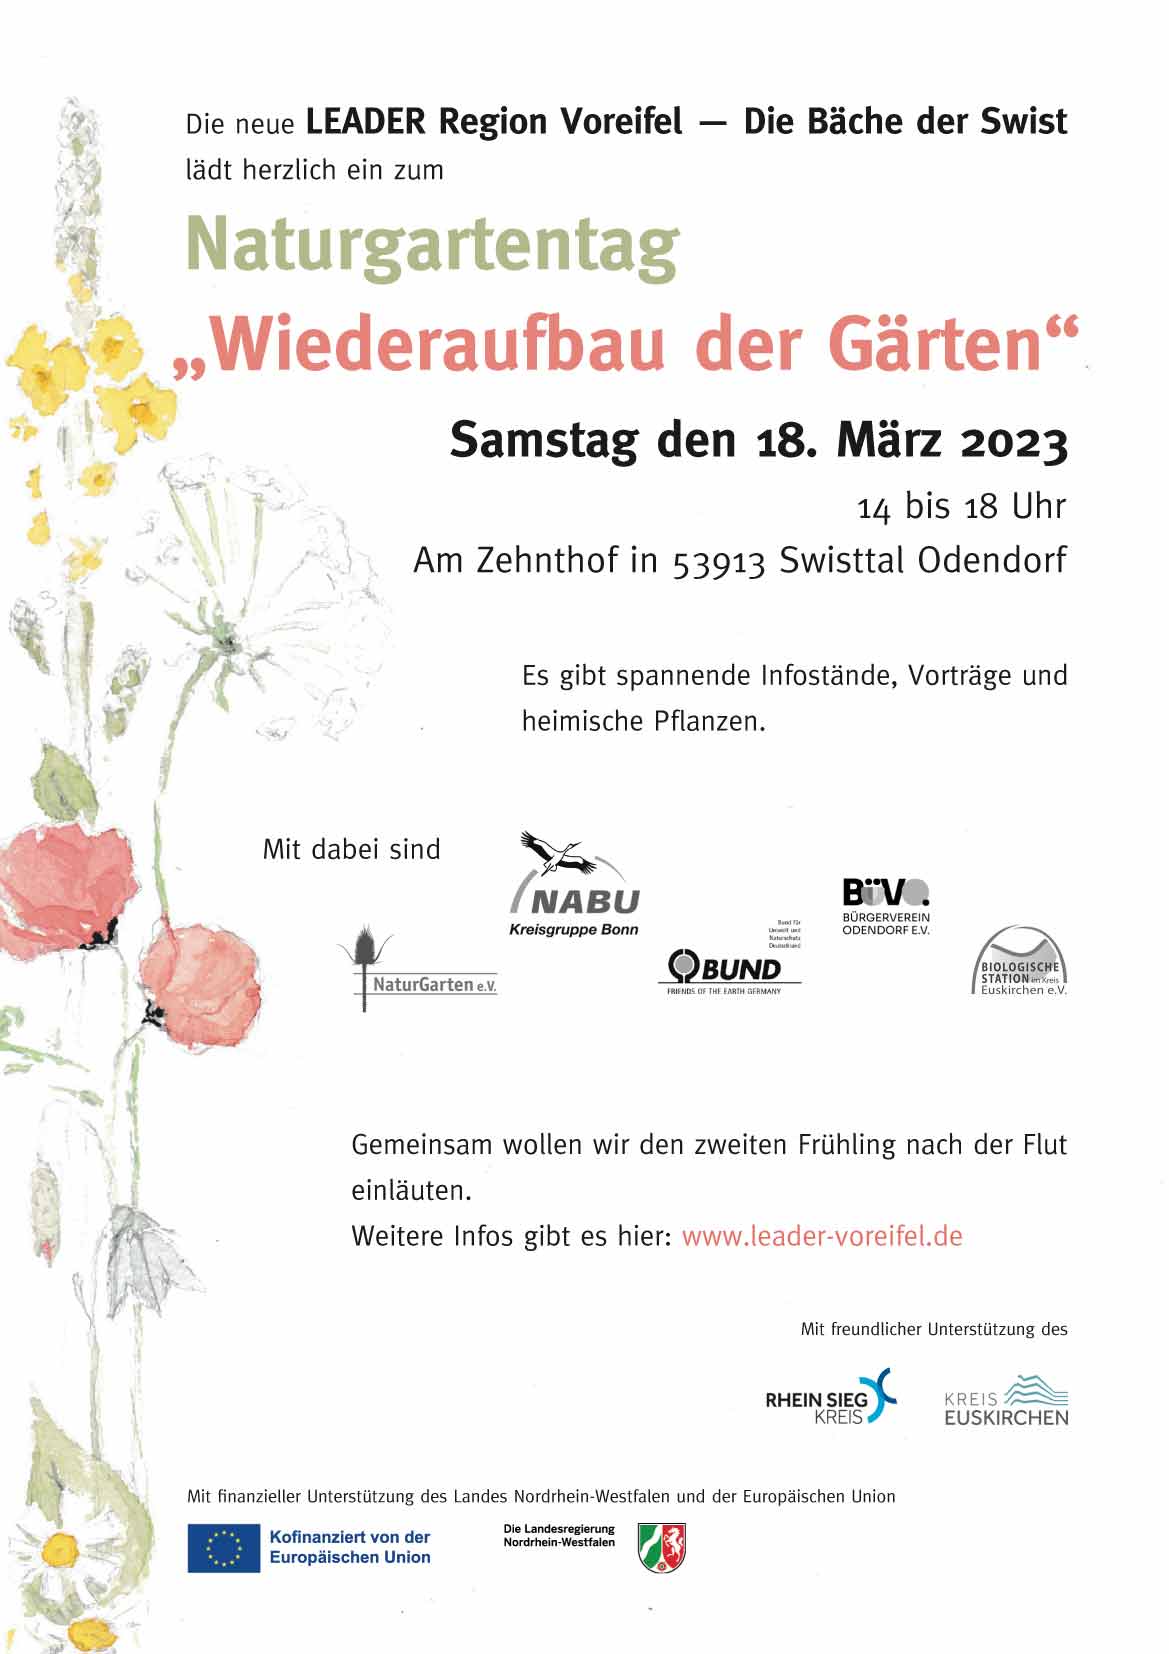 Naturgartentag der LEADER Region Voreifel, Swisttal Odendorf 18.3.23